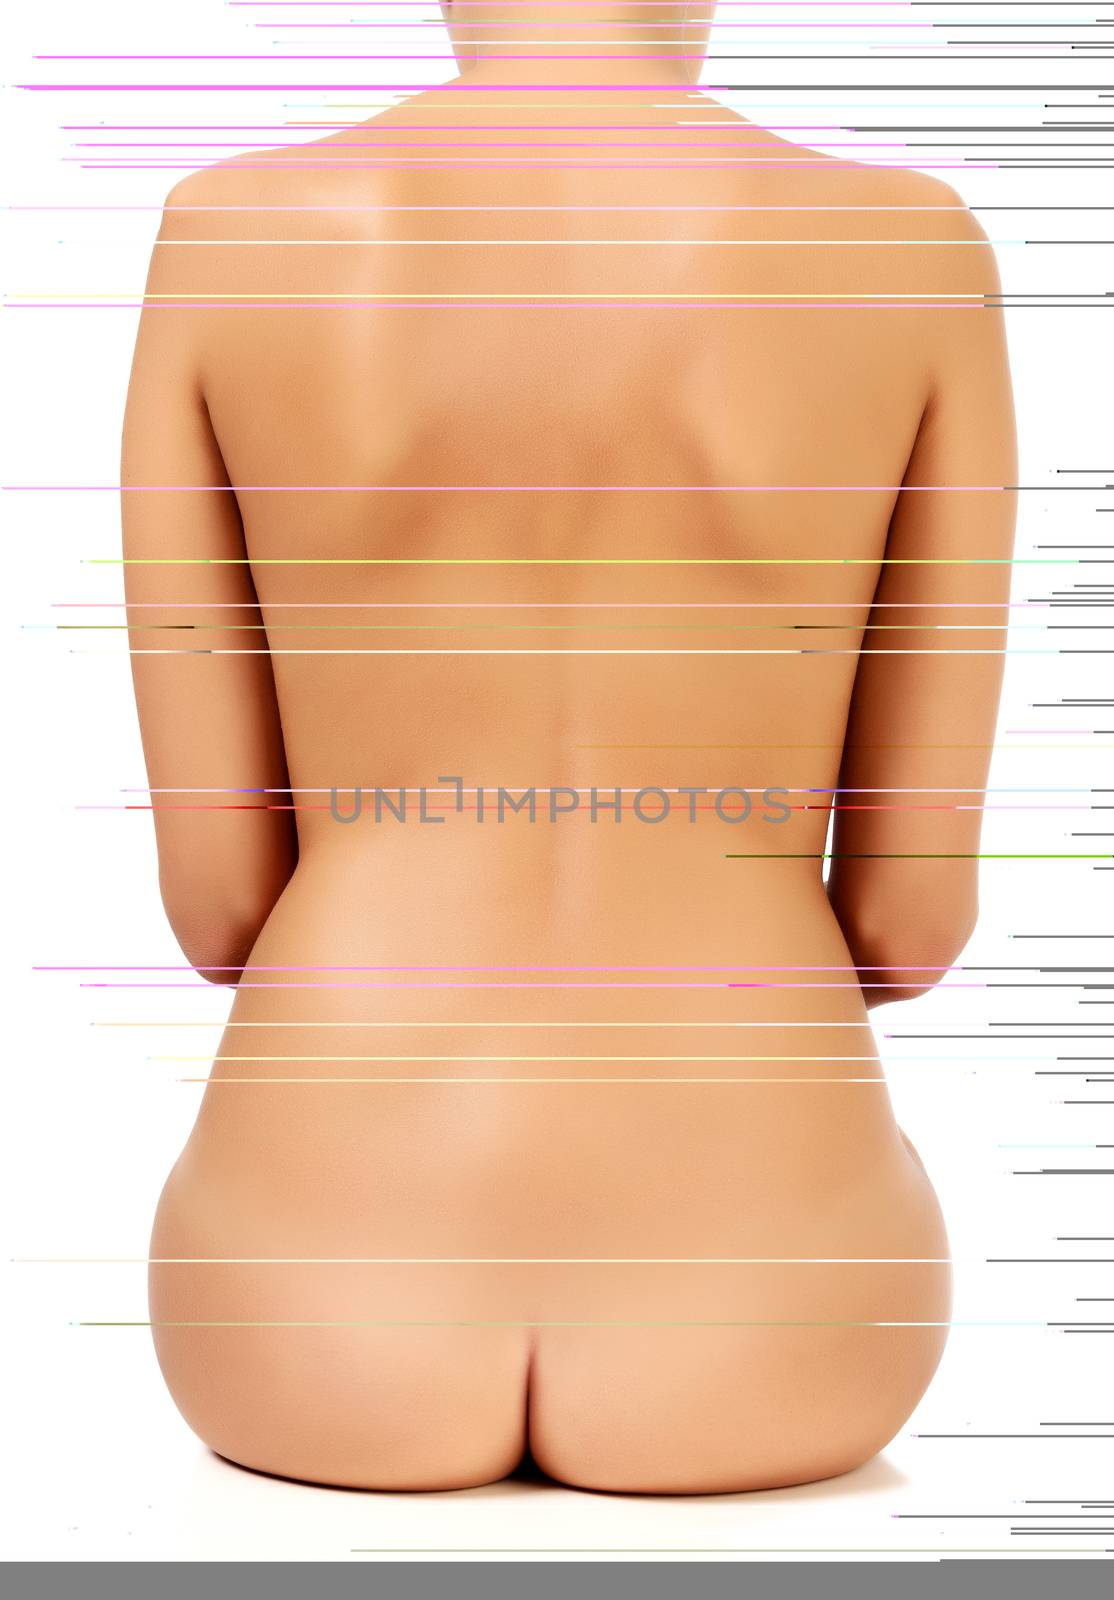 Naked female back, white background, isolated